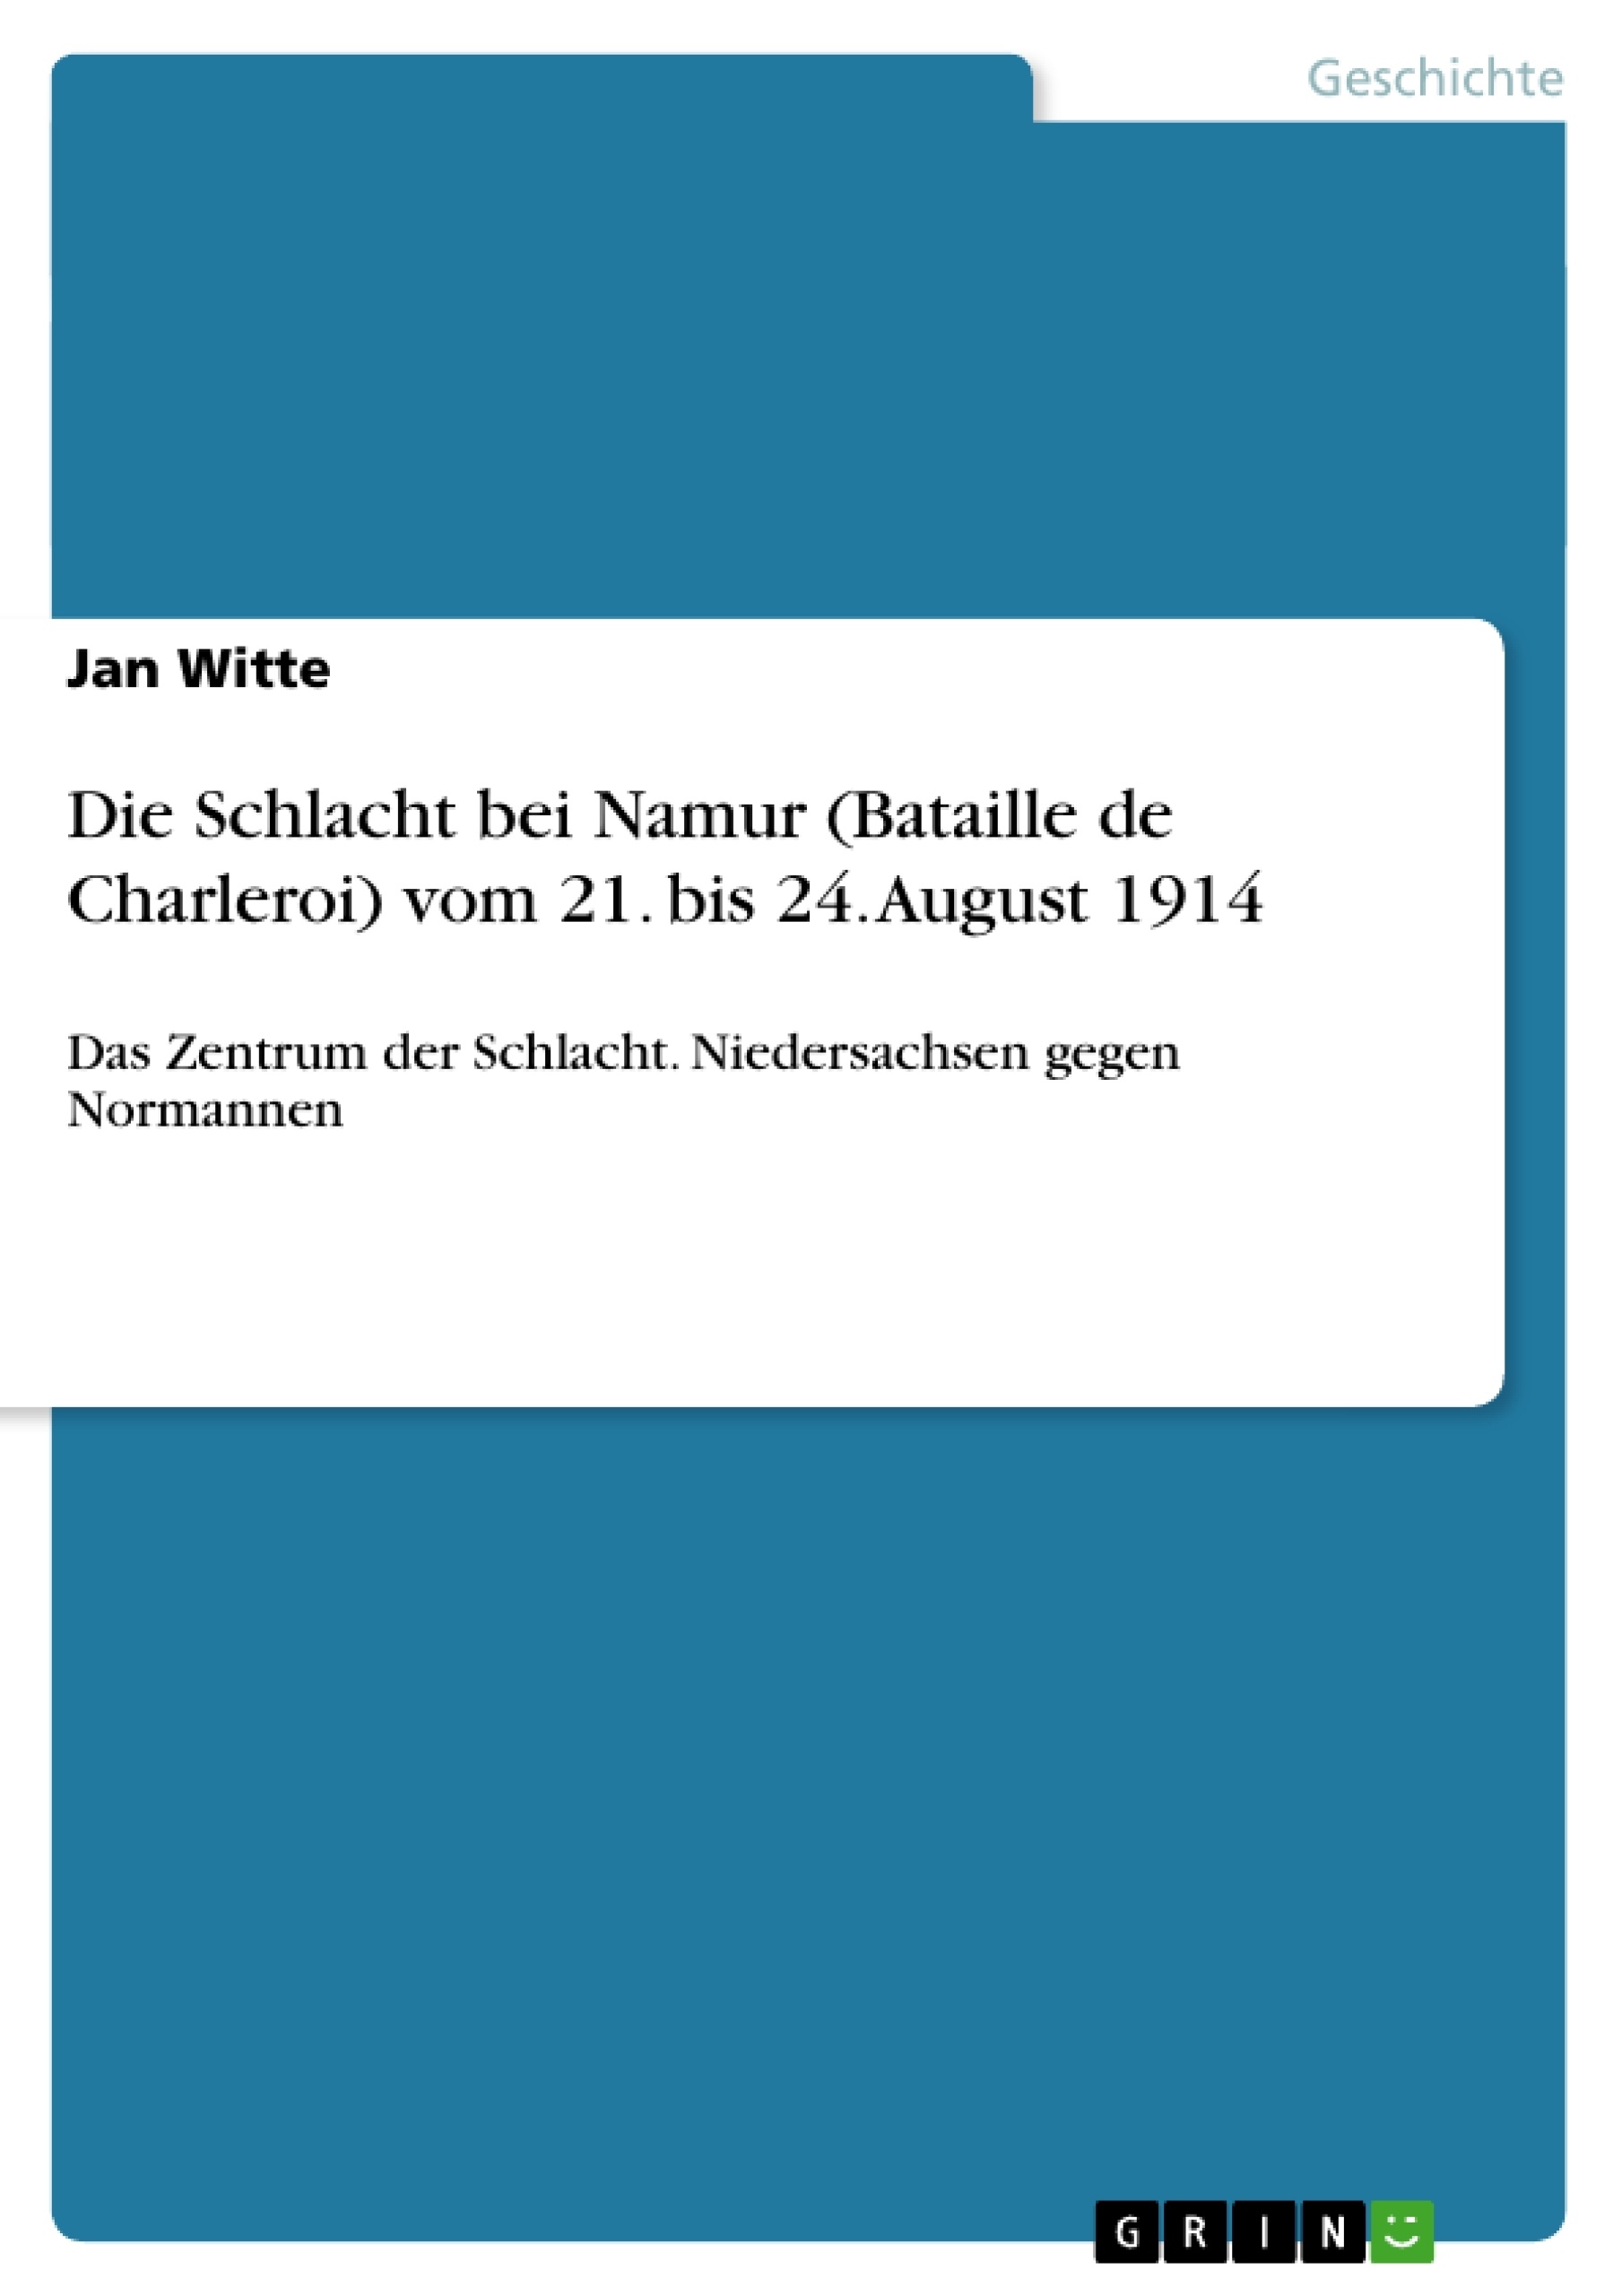 Titre: Die Schlacht bei Namur (Bataille de Charleroi) vom 21. bis 24. August 1914